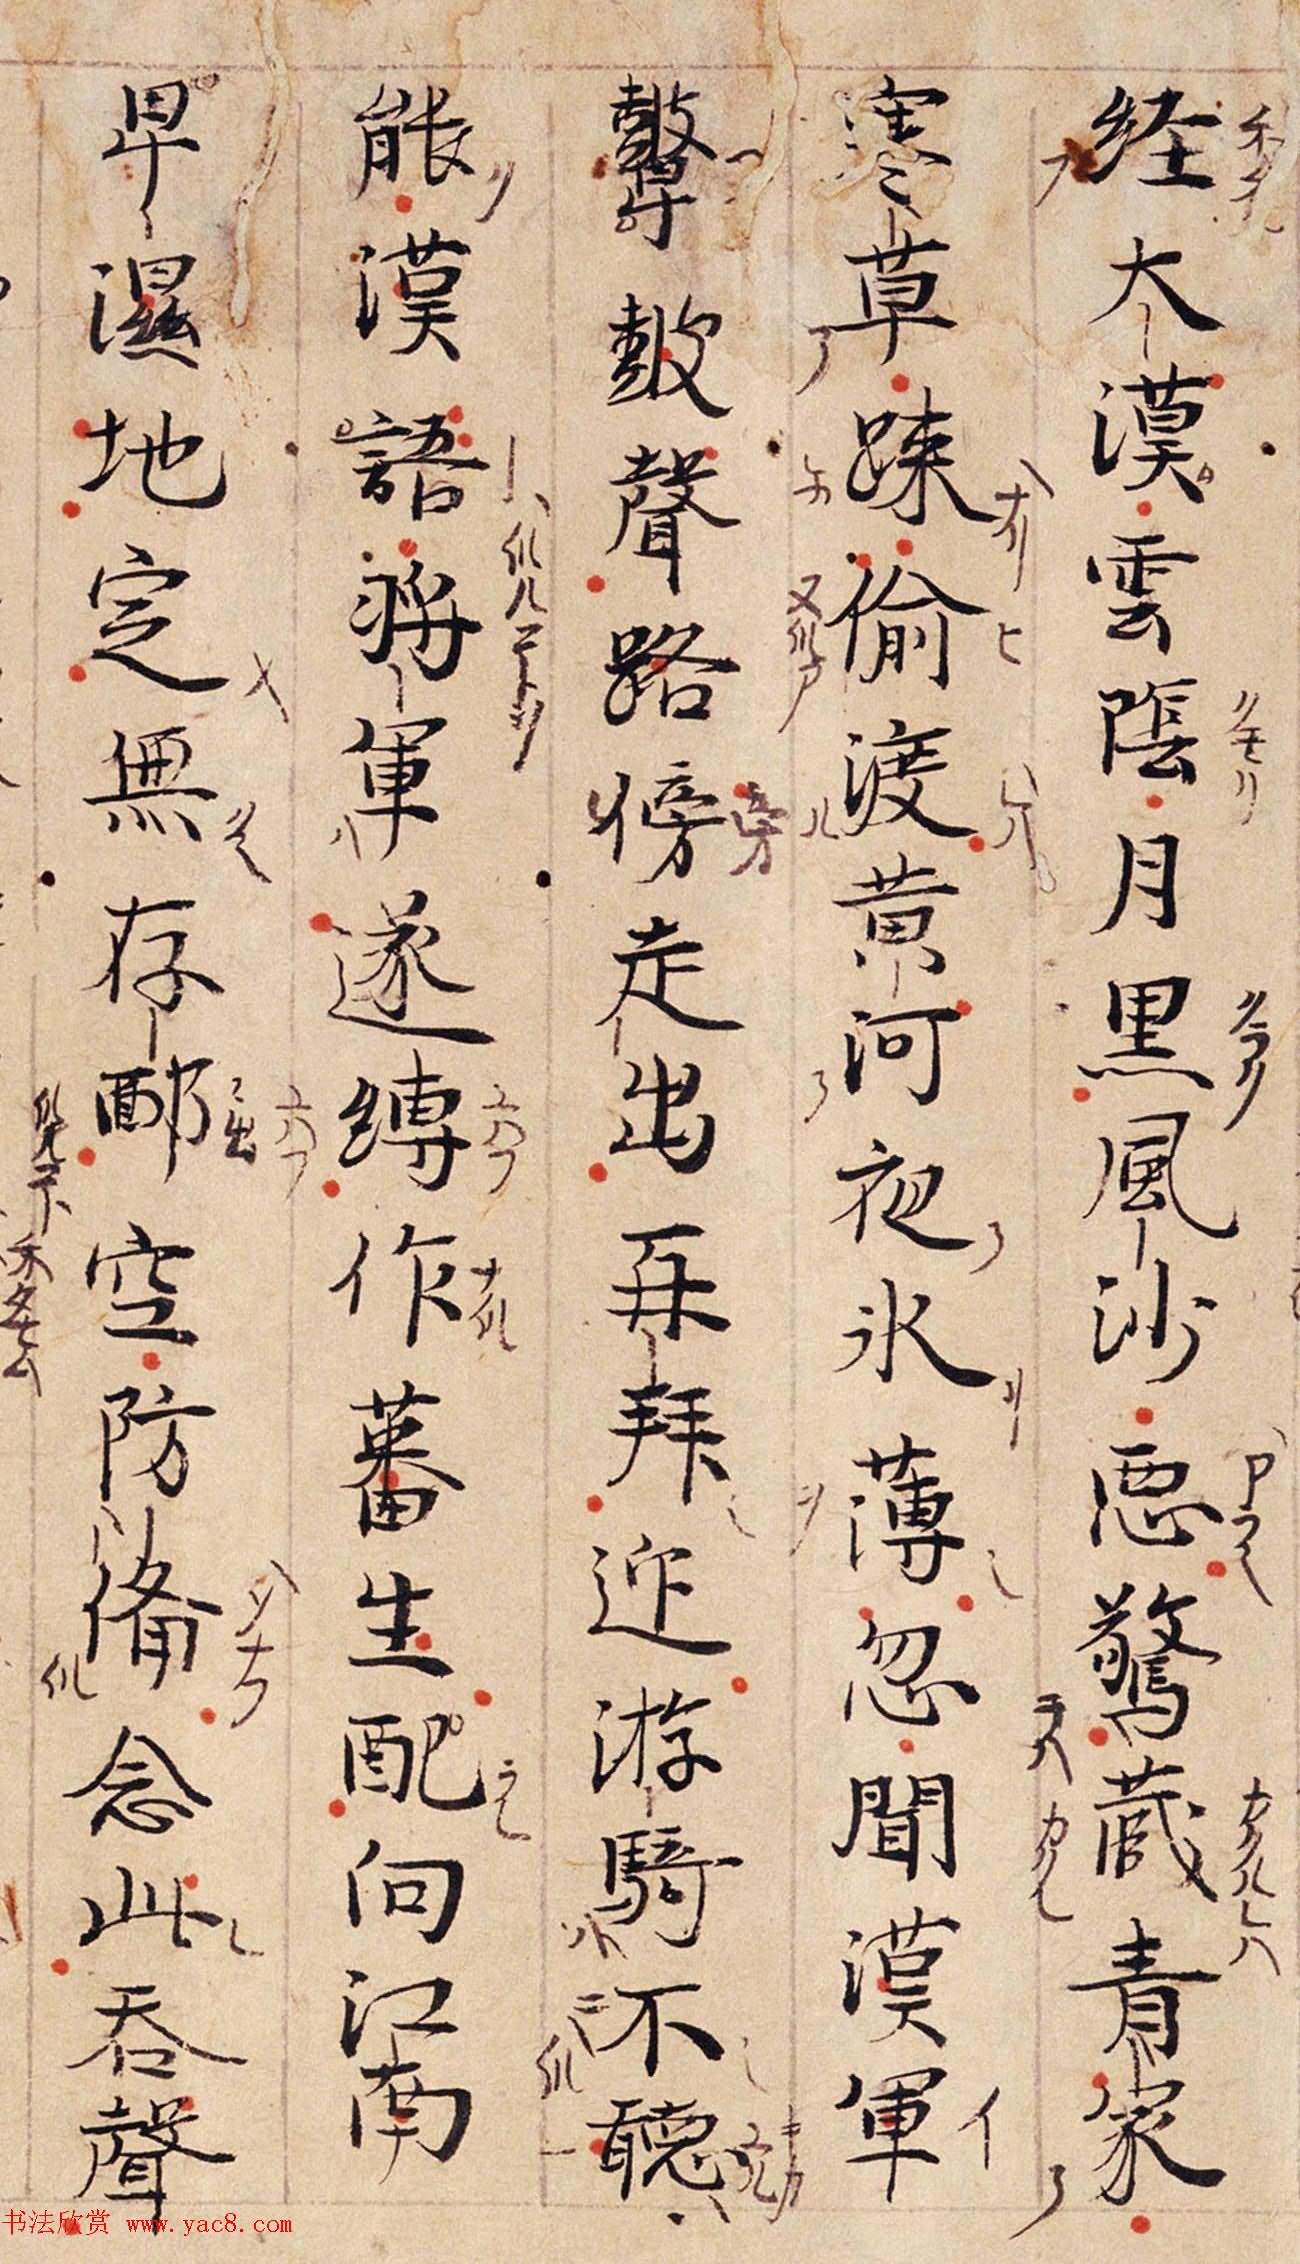 唐代詩人白居易手跡《白氏文集古抄殘卷》